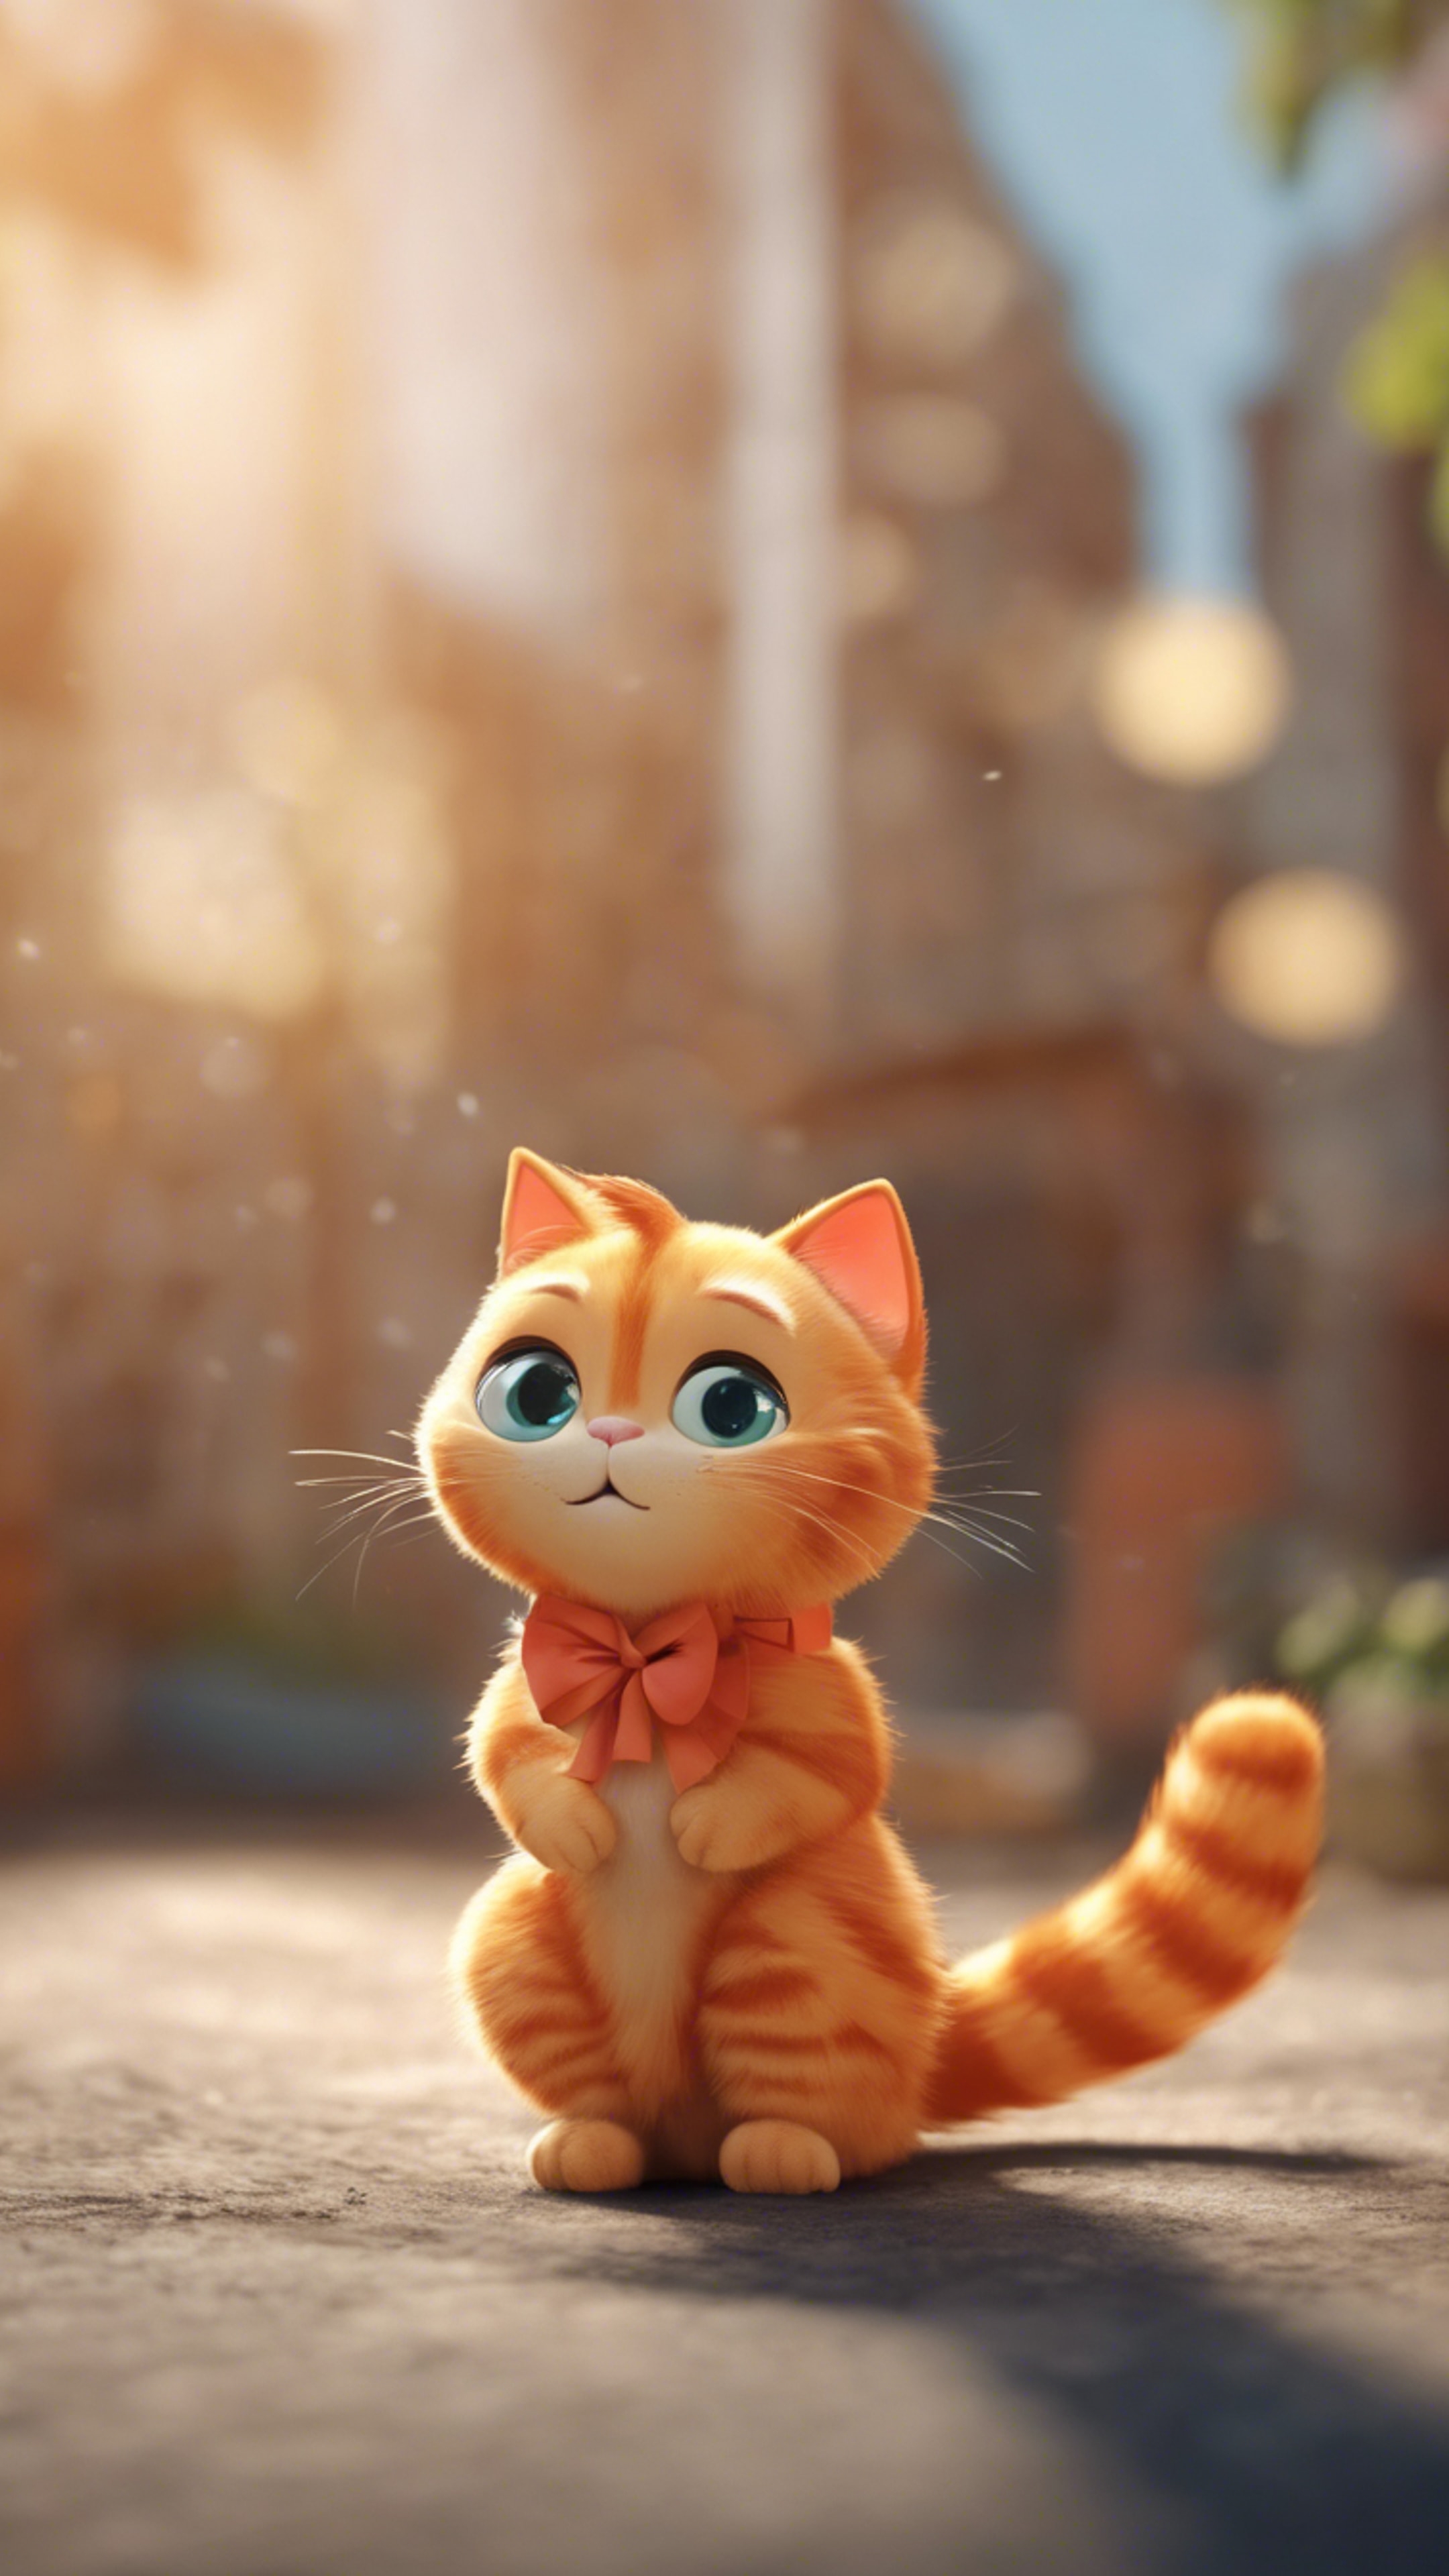 A cute, cartoon orange cat with a bow on its tail. Wallpaper[fd515b5f56b2448db836]